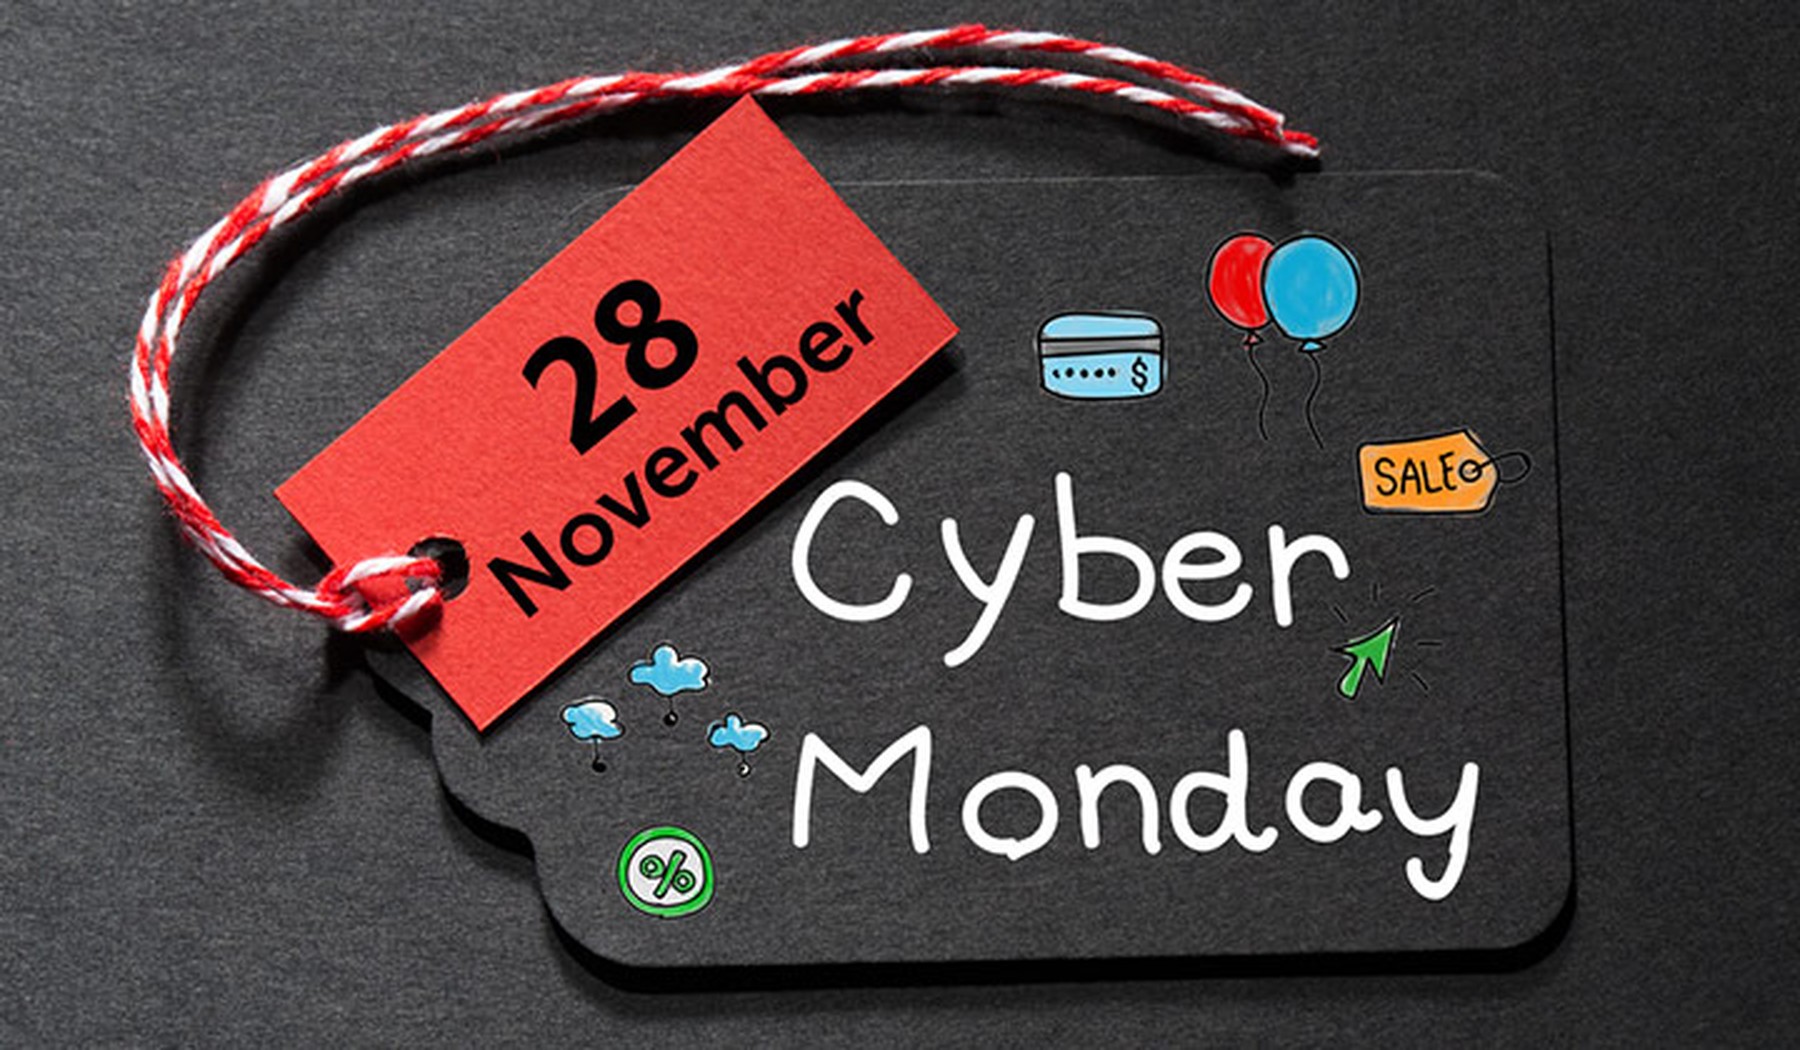 Etiqueta negra de Cyber Monday con dibujos y otra etiqueta roja con 28 November escrito